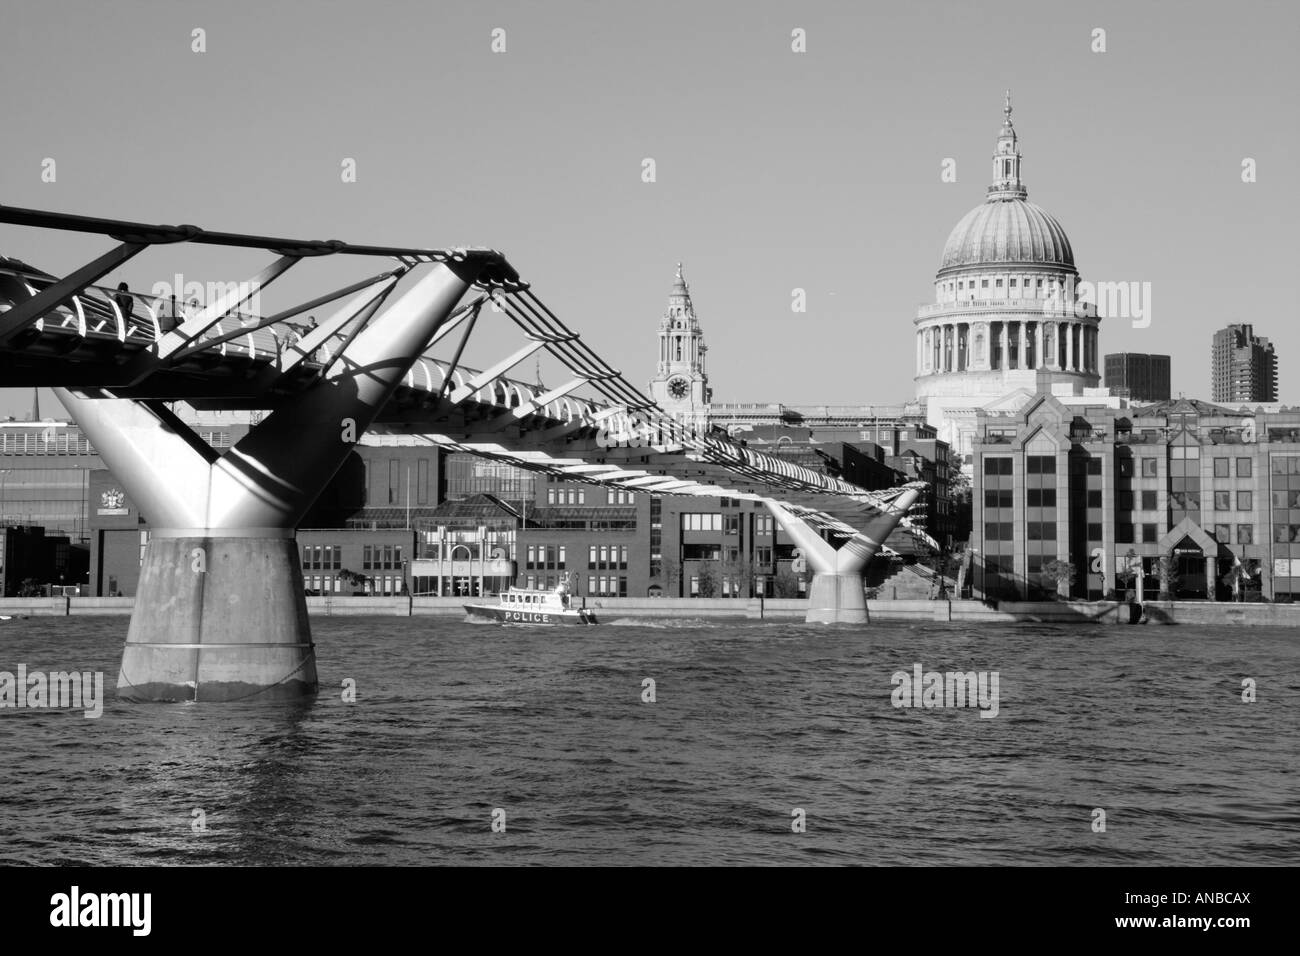 Le Millennium Bridge traversant la Tamise à Londres Angleterre tourné en noir et blanc Banque D'Images